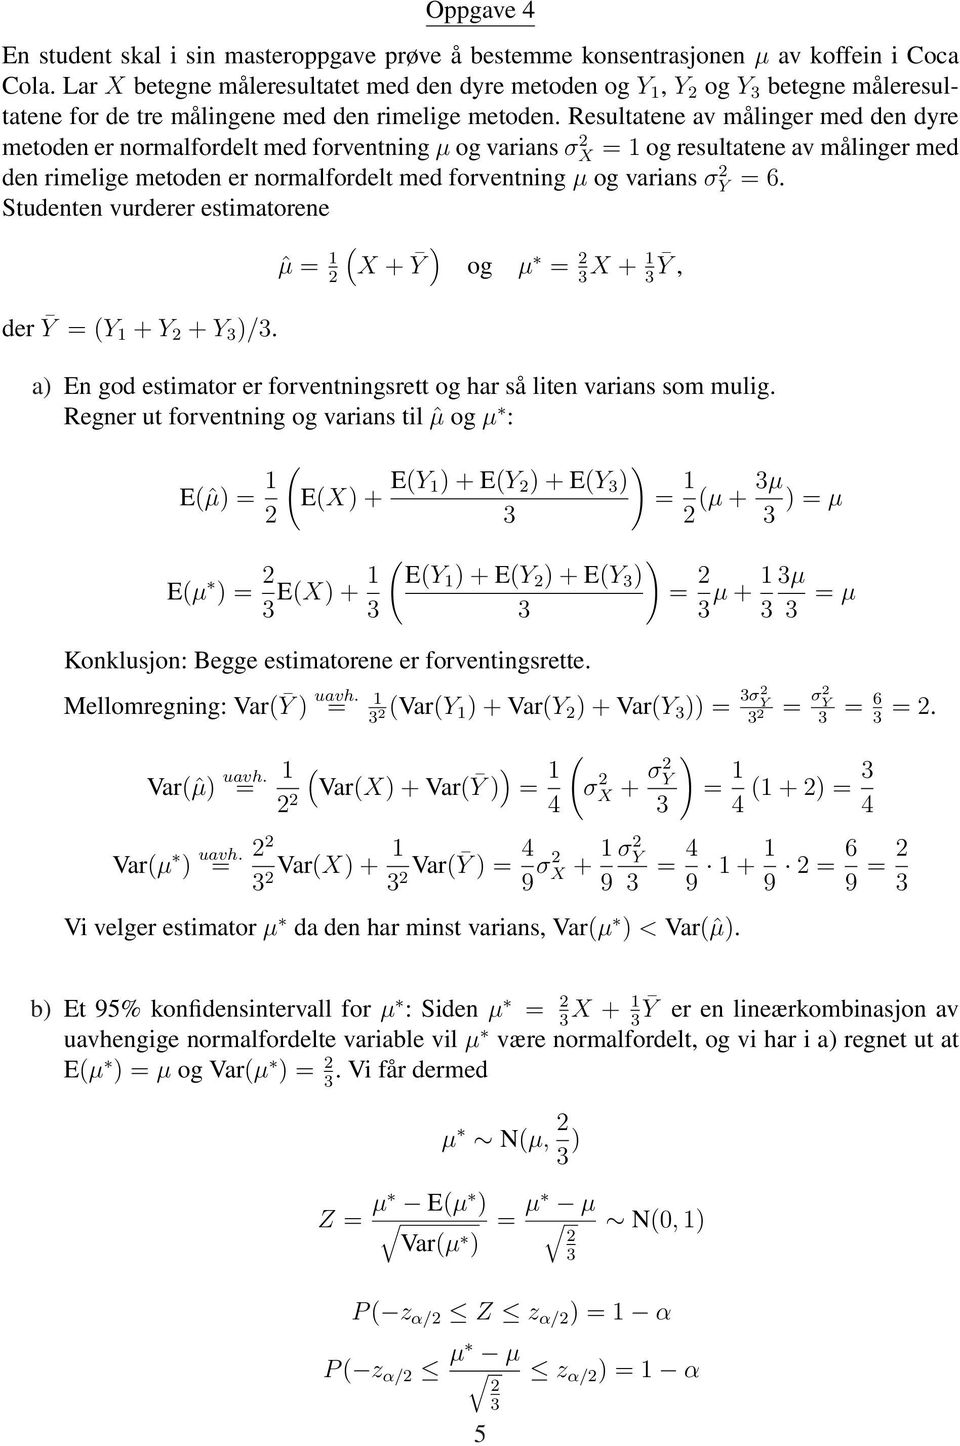 Resultatene av målinger med den dyre metoden er normalfordelt med forventning µ og varians σ X = 1 og resultatene av målinger med den rimelige metoden er normalfordelt med forventning µ og varians σ